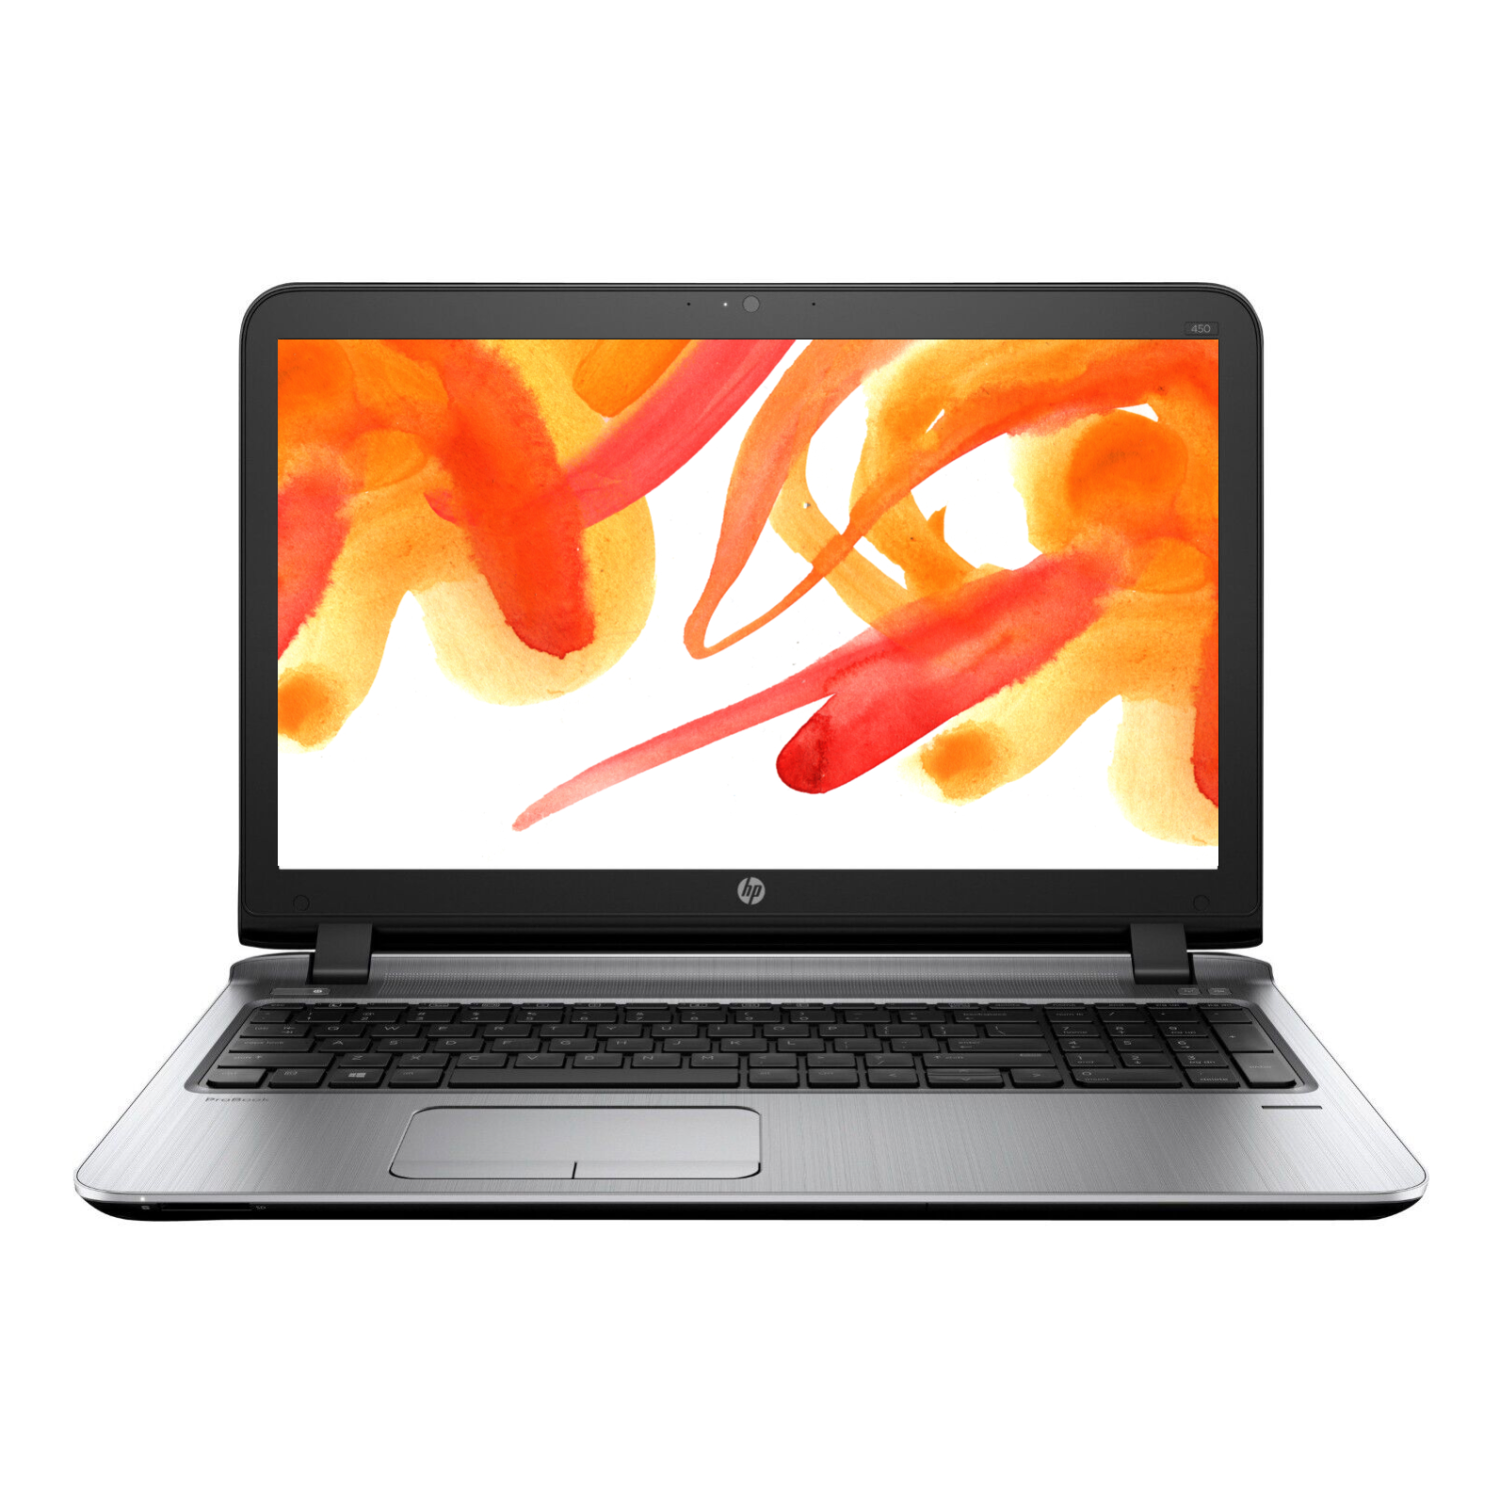 Refurbished (Excellent) HP ProBook 450 G3 Laptop 15.6 